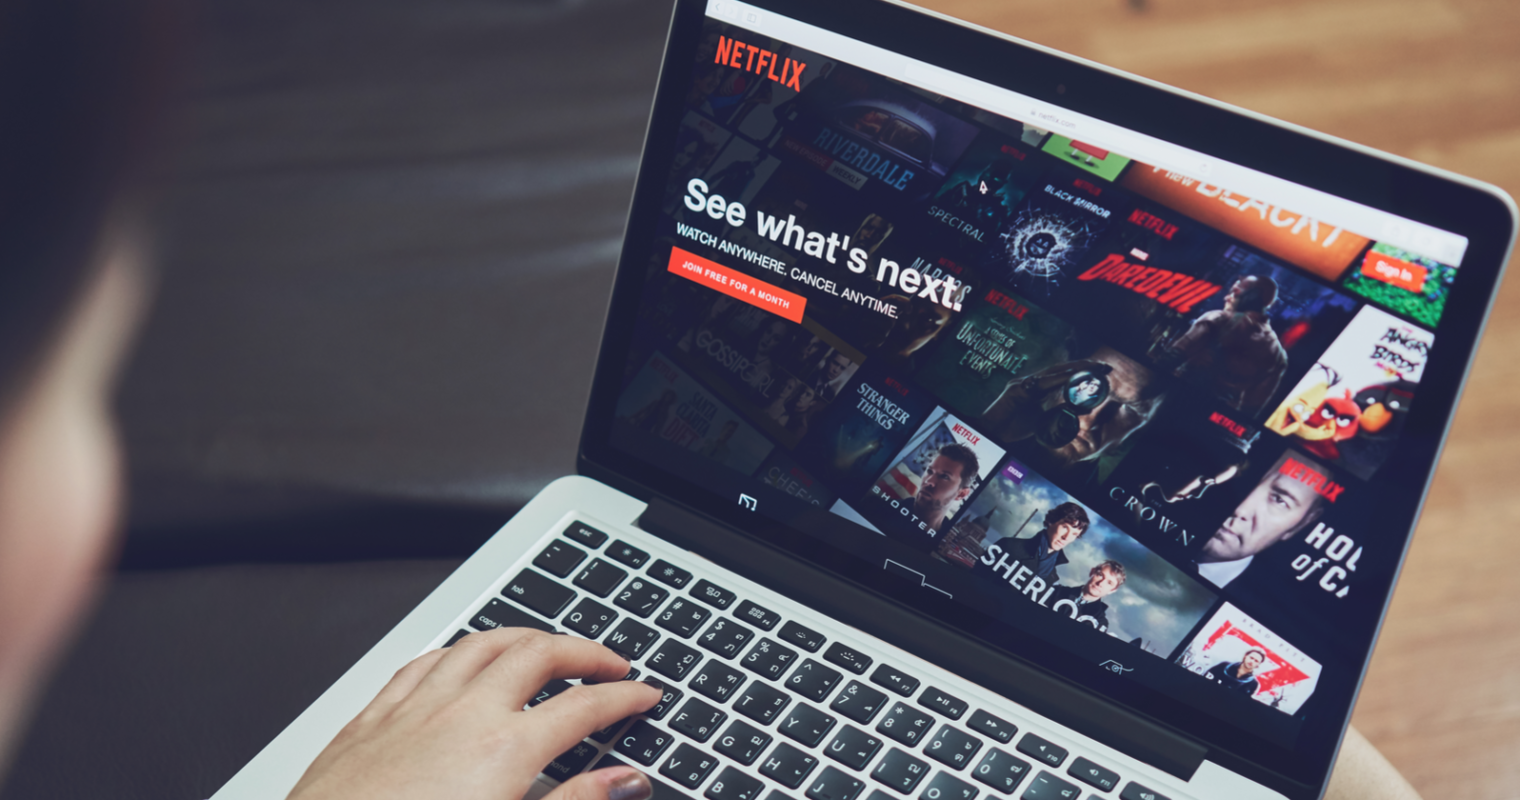 Netflix 1 milyona yakın abone kaybetti